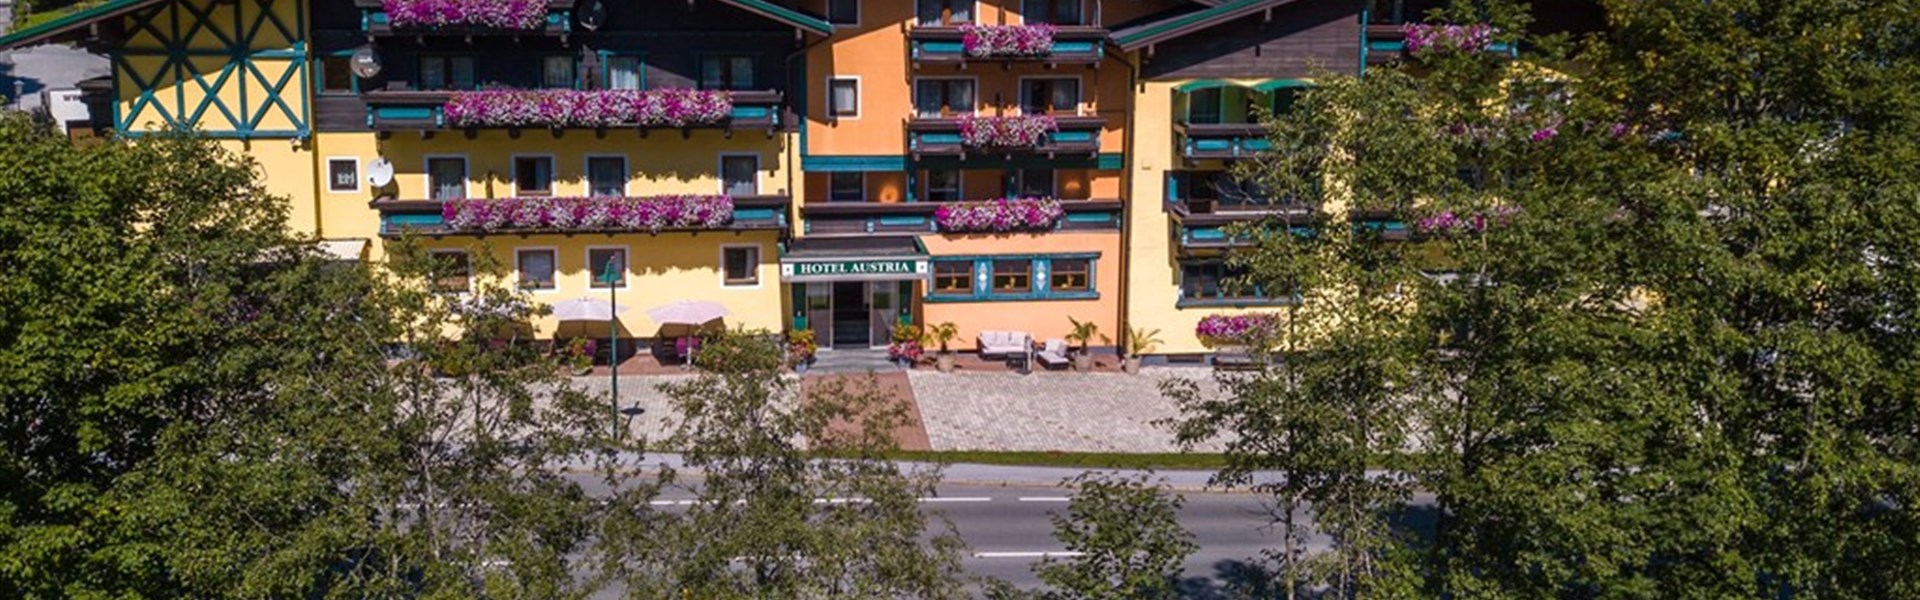 Hotel Austria (S) - 